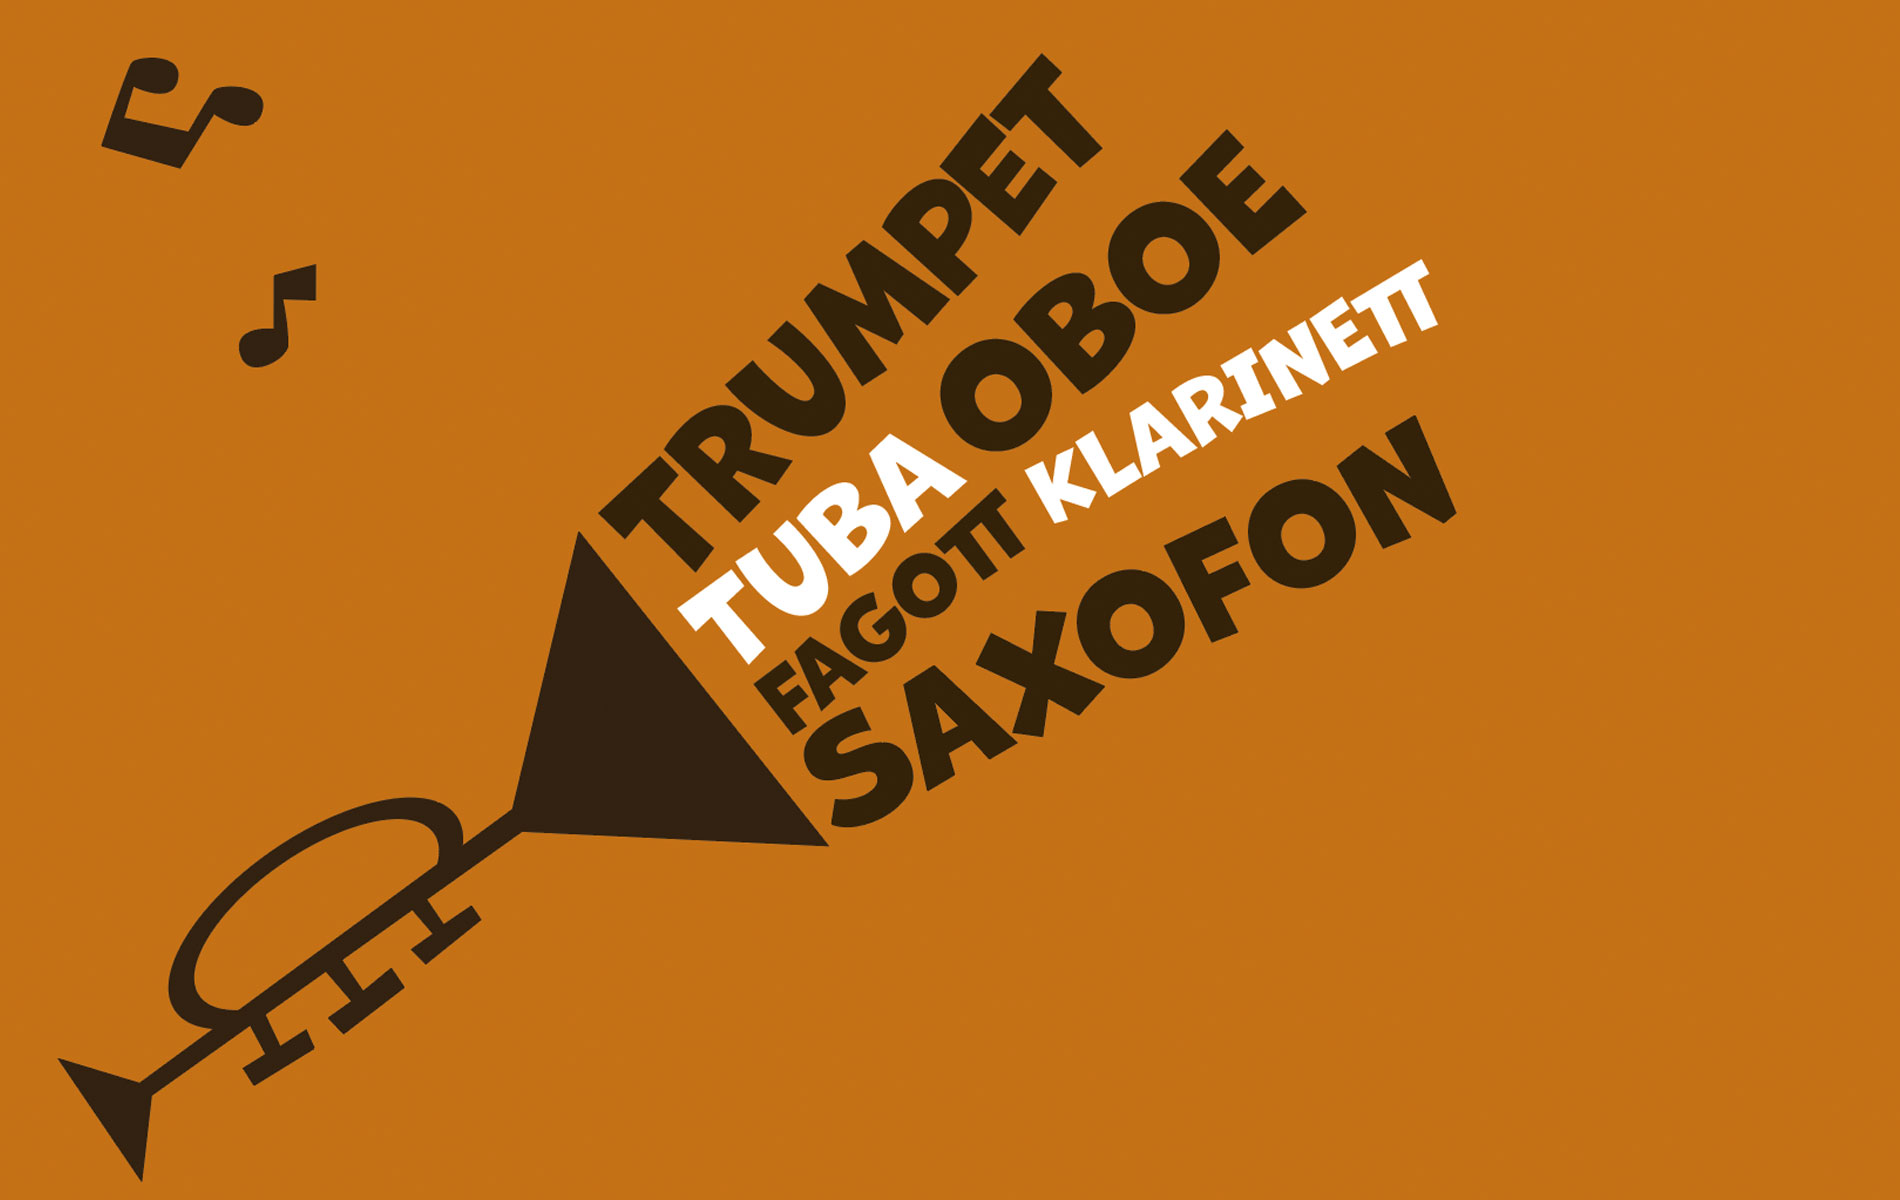 Illustrerad svart trumpet mot brun bakgrund som blåser ut orden: trumpet, tuba, oboe, fagott, klarinett,saxofon.